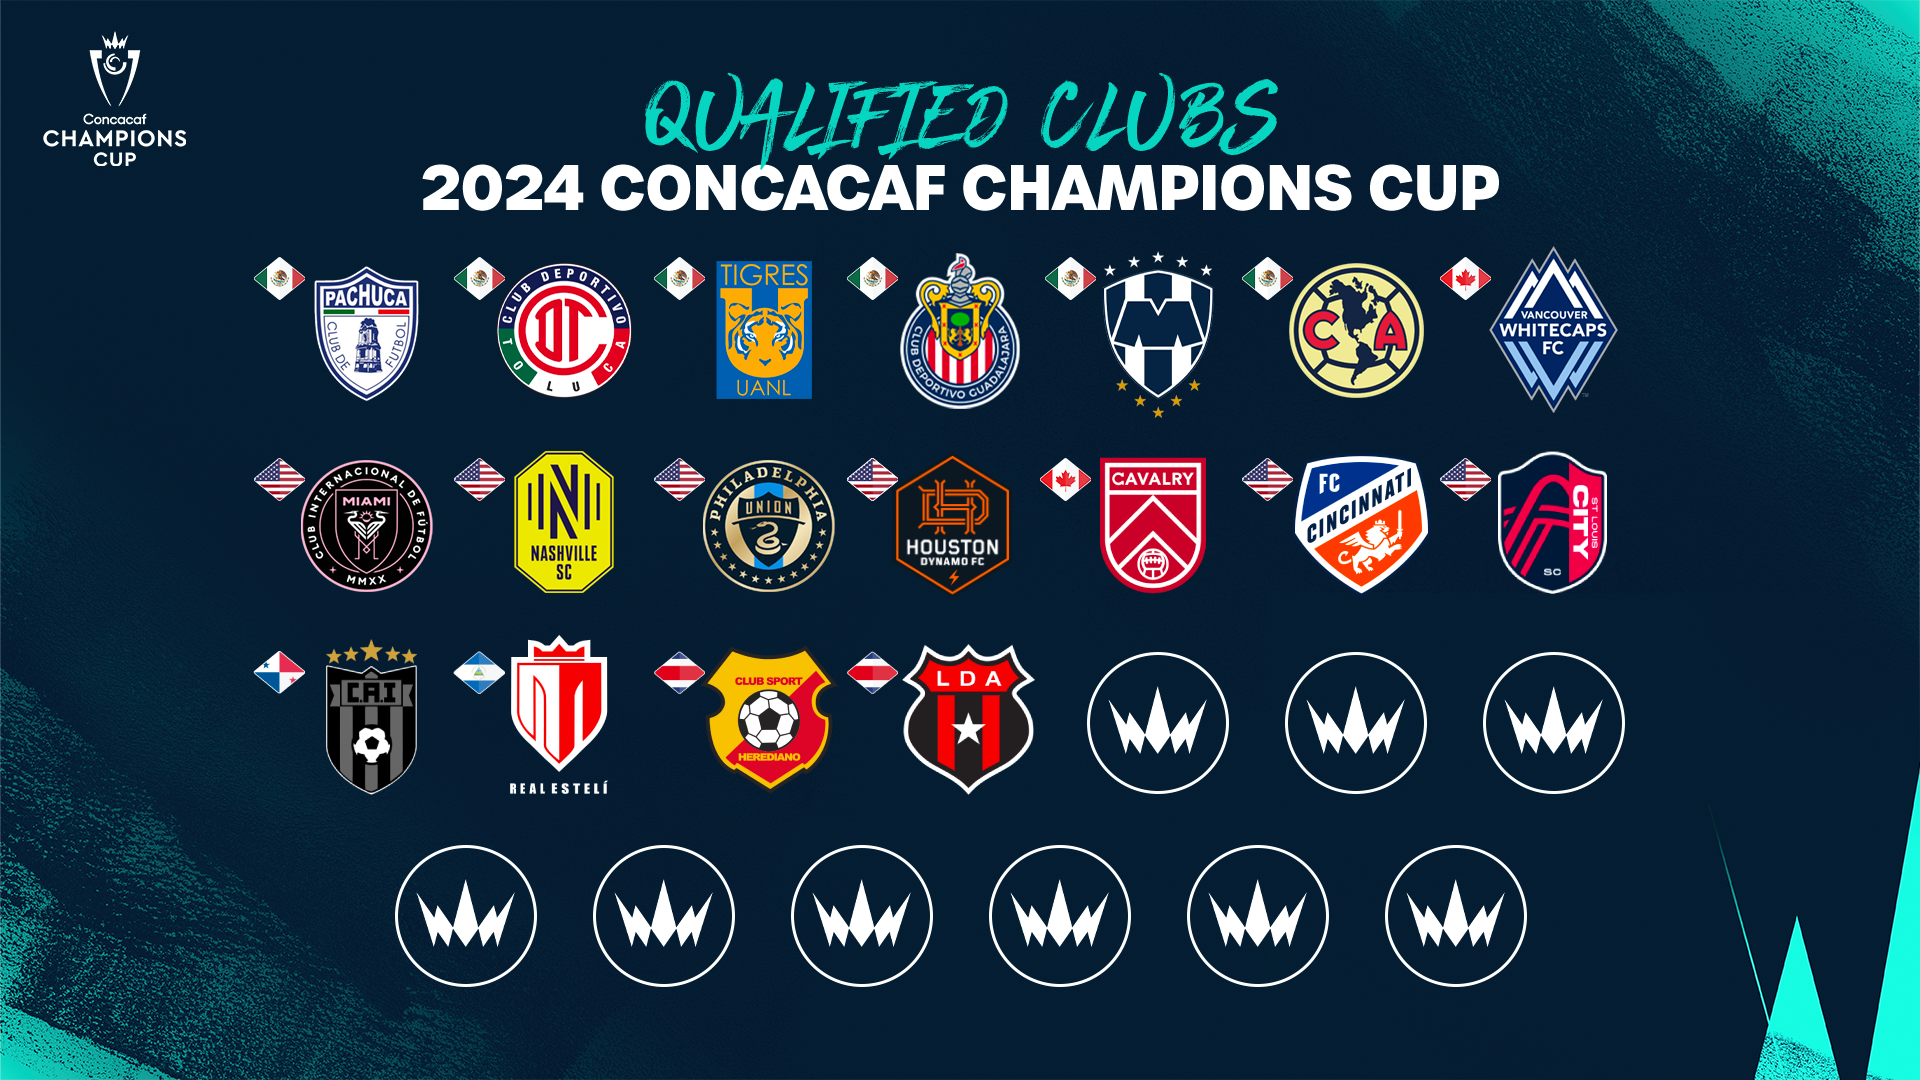 Sólo faltan 9 boletos para la Copa de Campeones de la Concacaf 2024.